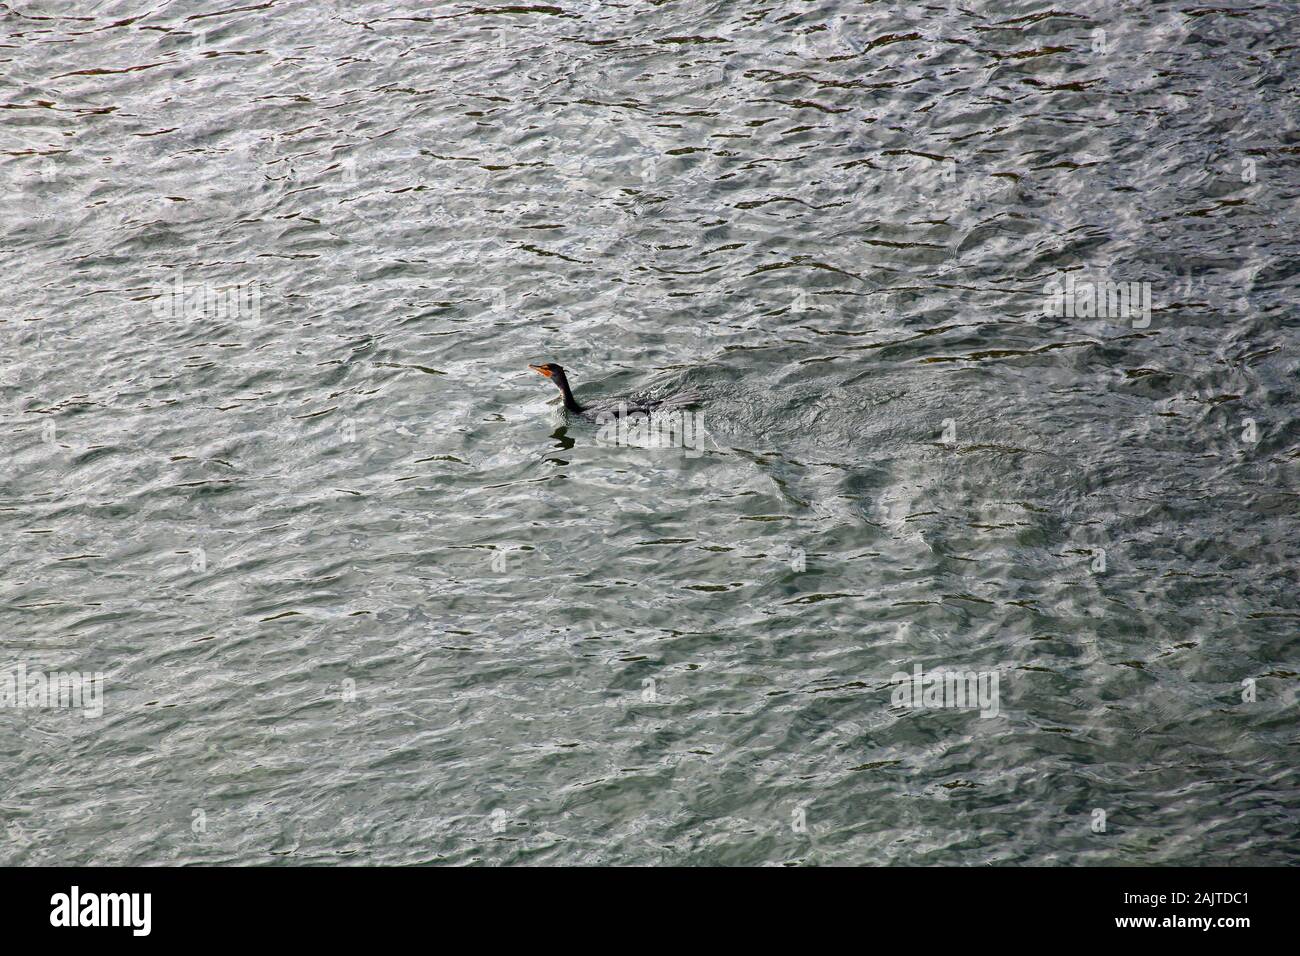 Cormoranes nadando en el río Bow llena con ondulaciones fotografiado desde arriba Foto de stock